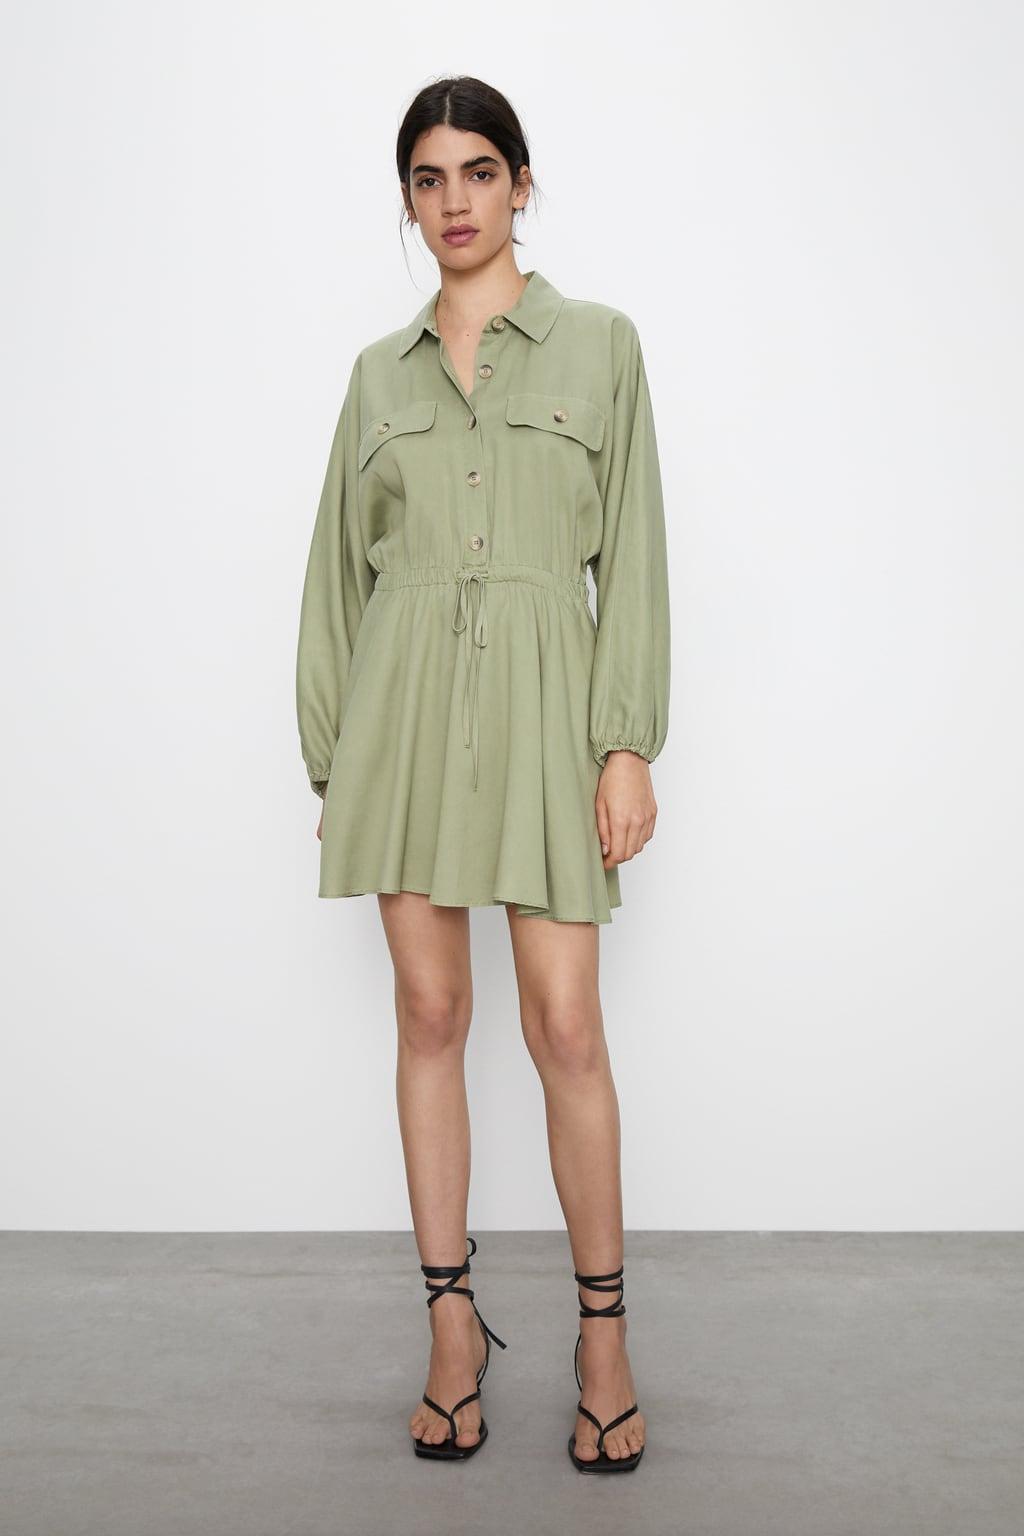 Отзыв на Течет платье С Рубашка Воротник из Интернет-Магазина Zara